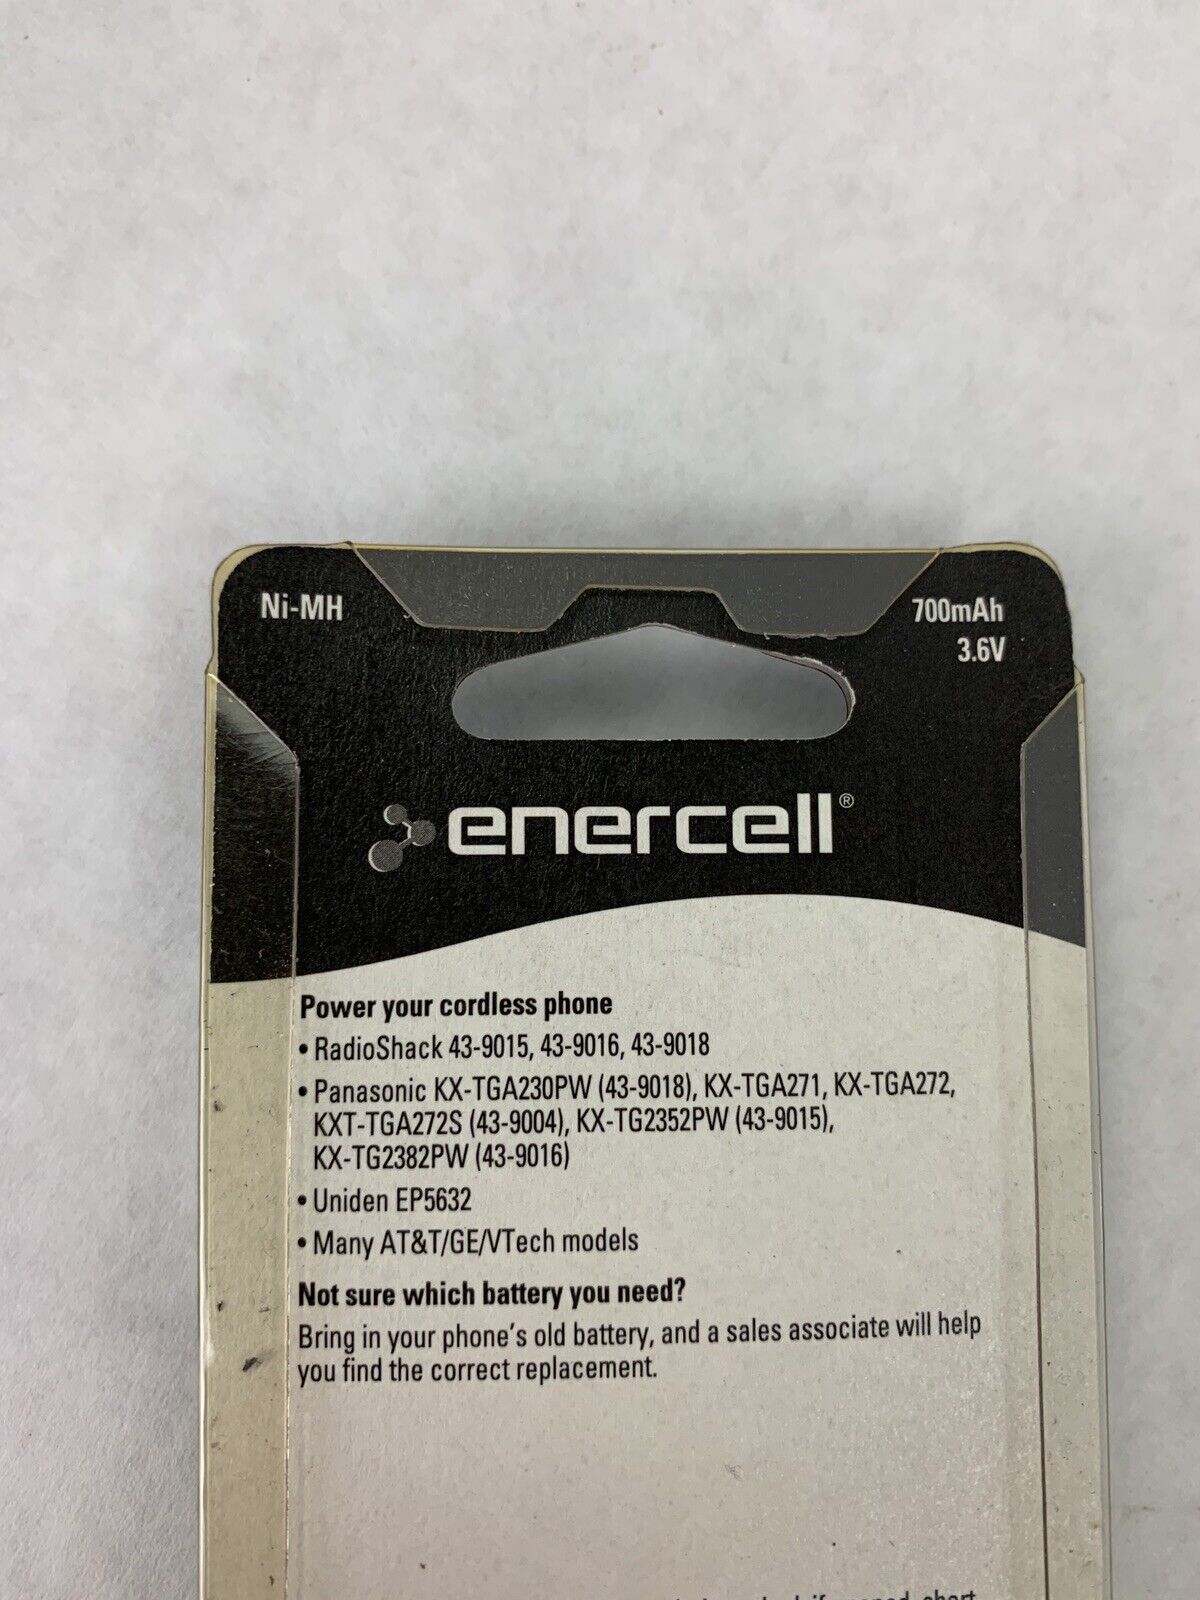 New Enercell Cordless Phone Battery 700mAh 3.6 V Ni-MH 23-906